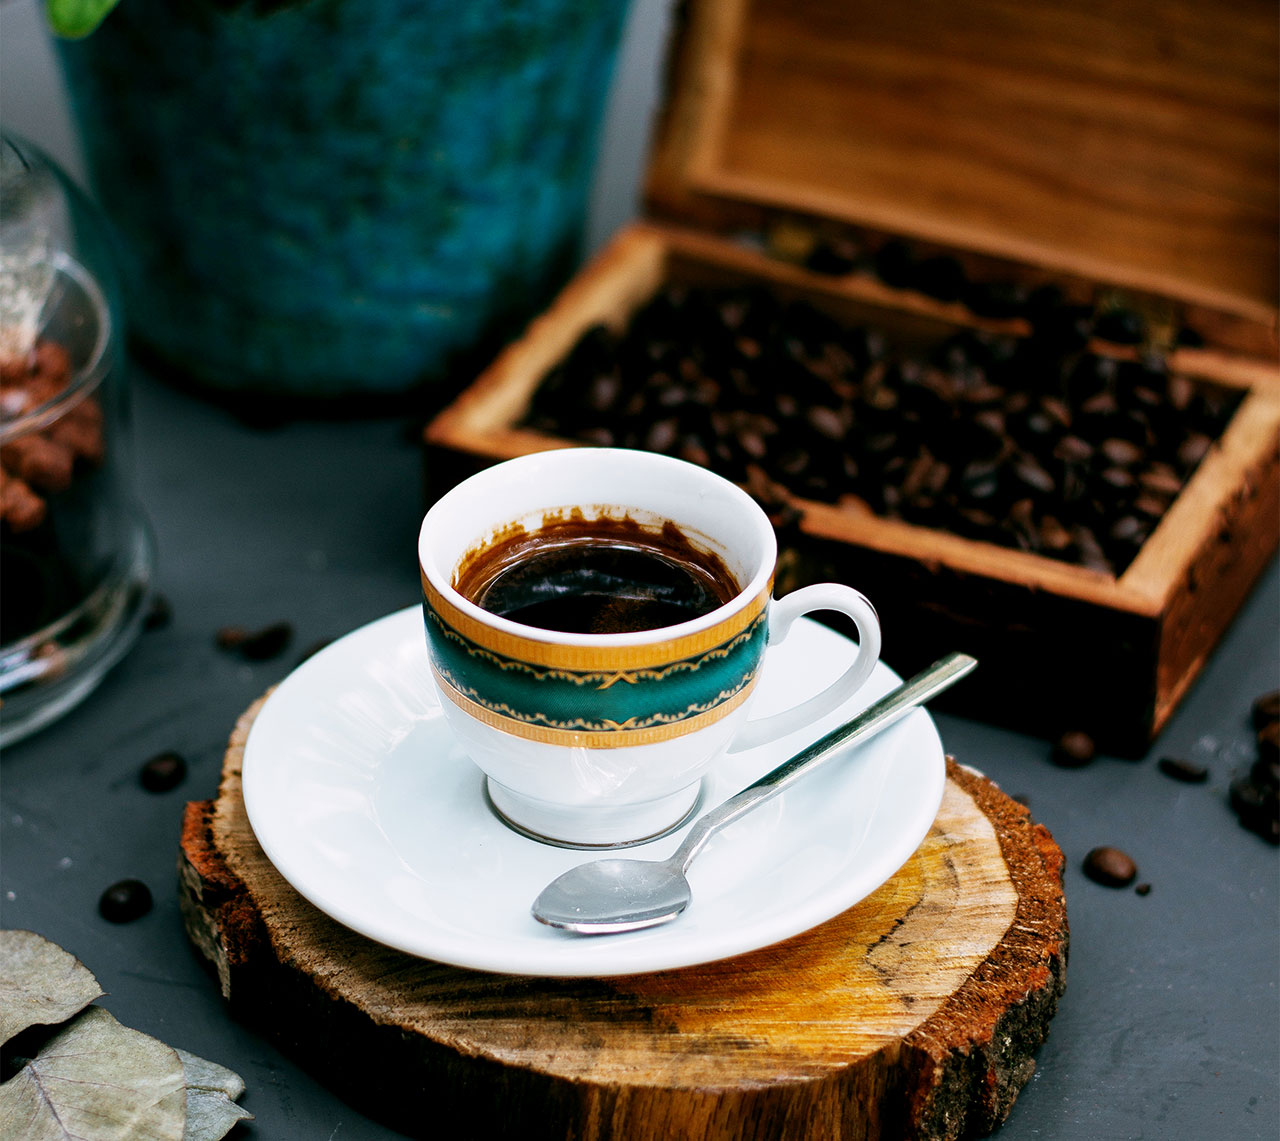 เรื่องราวของกาแฟ vs ชา เป็นไปได้หรือไม่ที่จะดื่มไปพร้อมกัน กาแฟ vs ชา